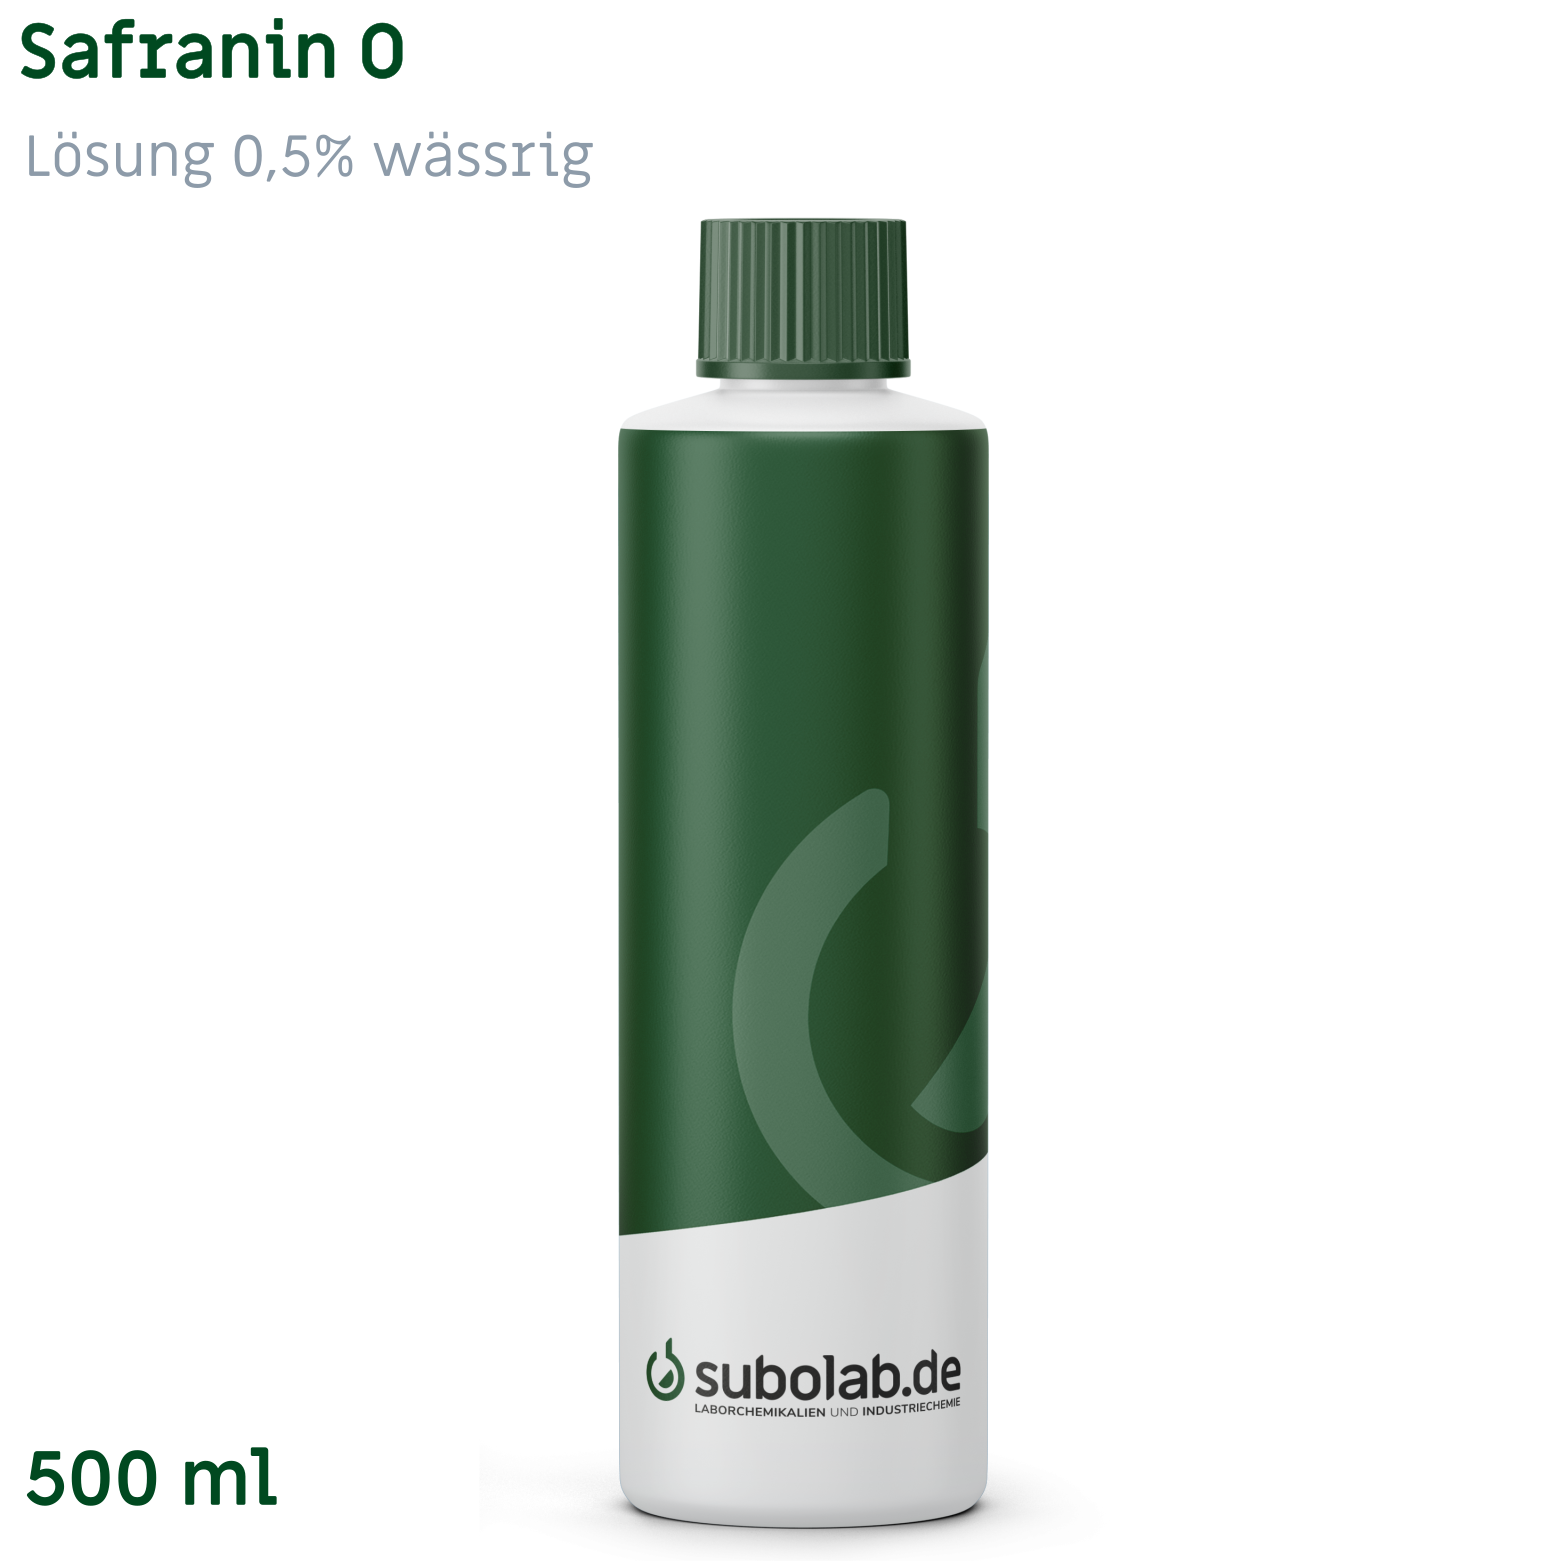 Bild von Safranin O - Lösung 0,5% wässrig (500 ml)